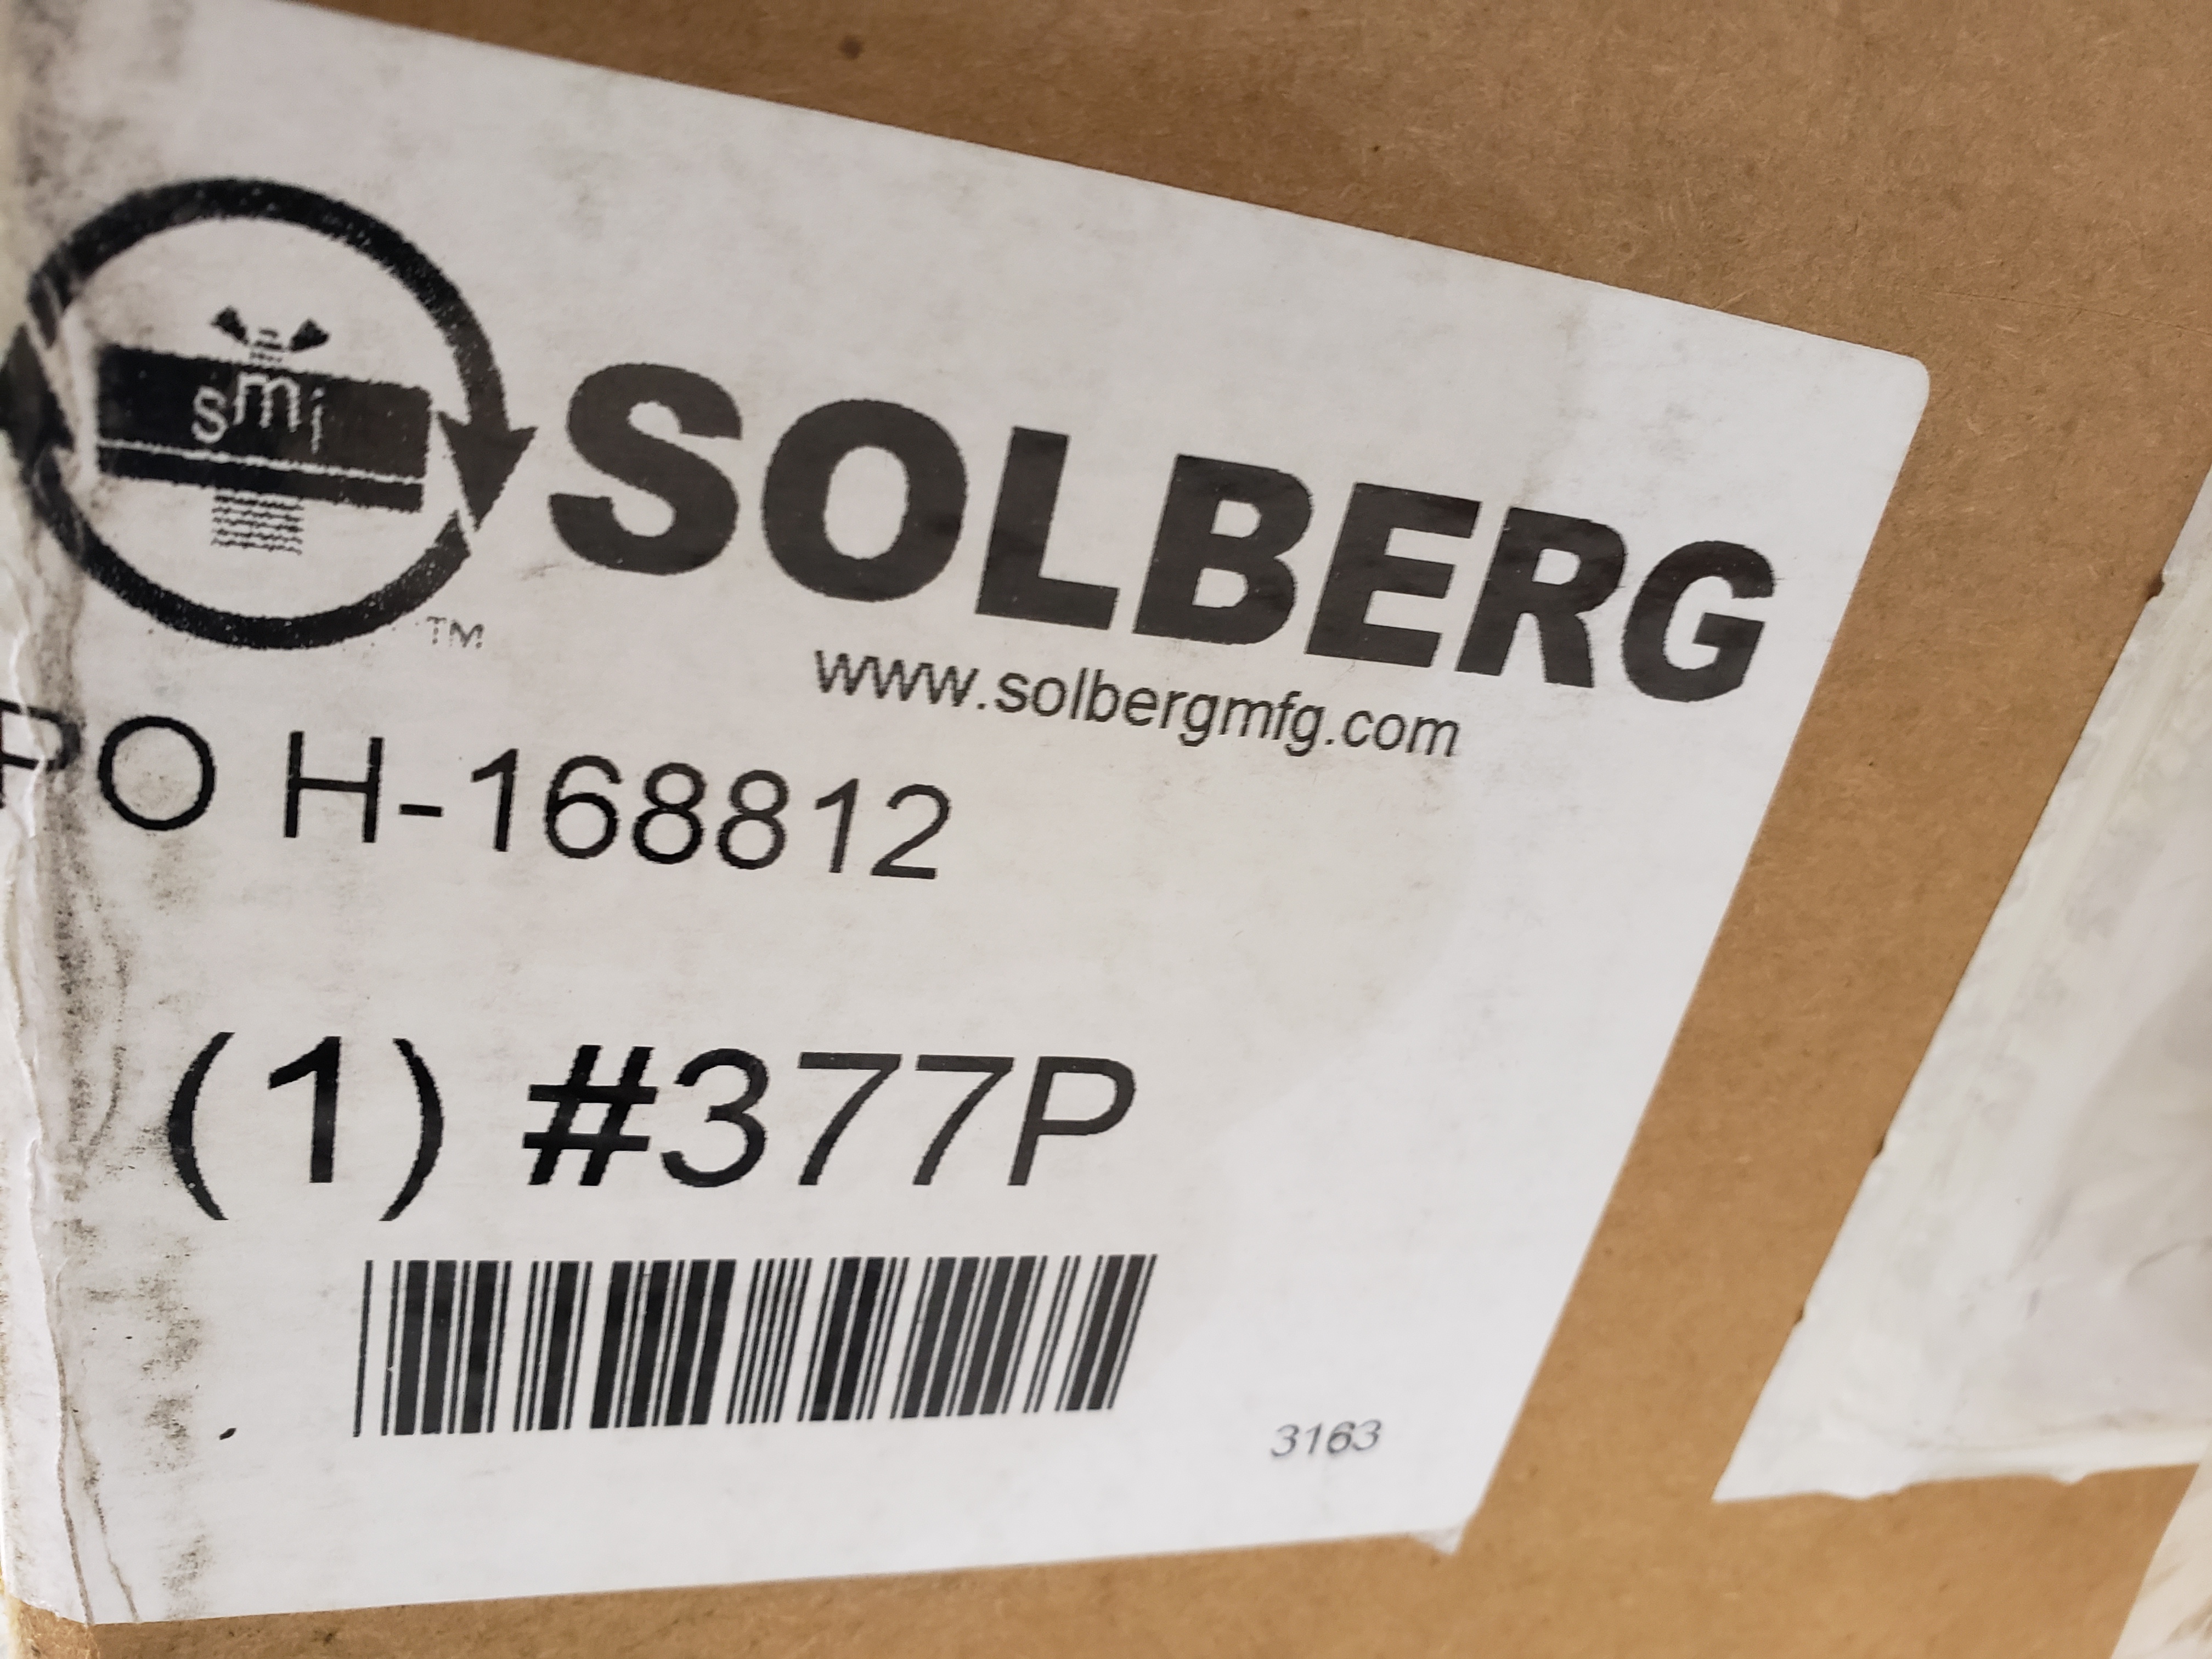 Solberg Filter POH-168812 377P